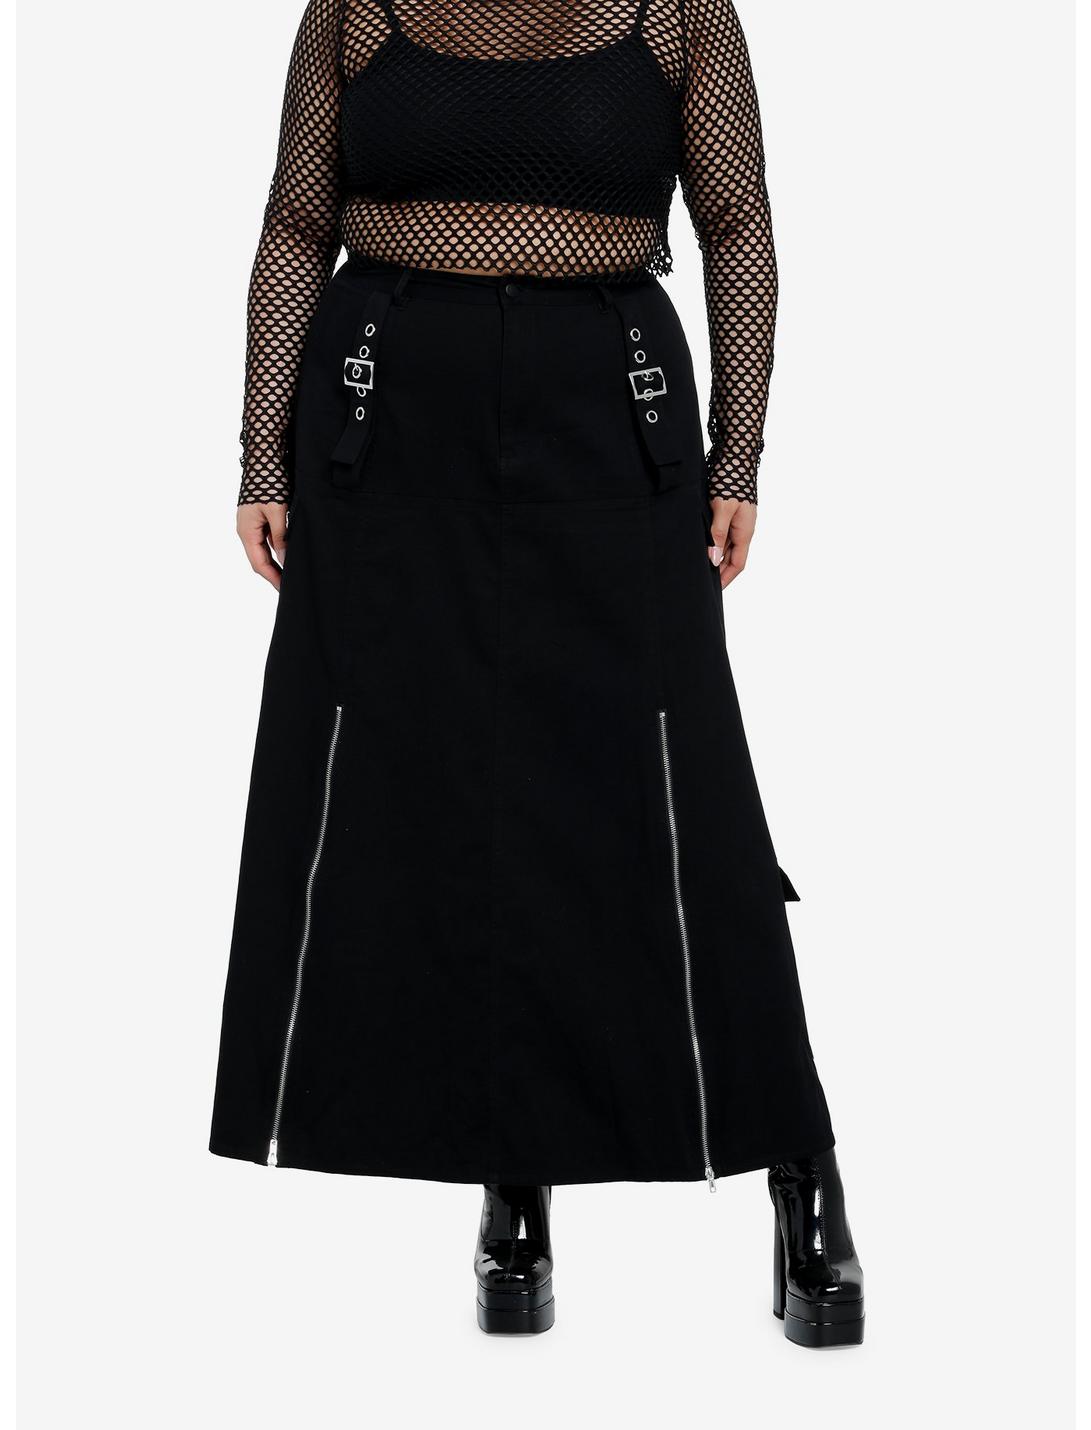 Social Collision Black ZIppers & Grommets Maxi Skirt  Plus Size, BLACK, hi-res